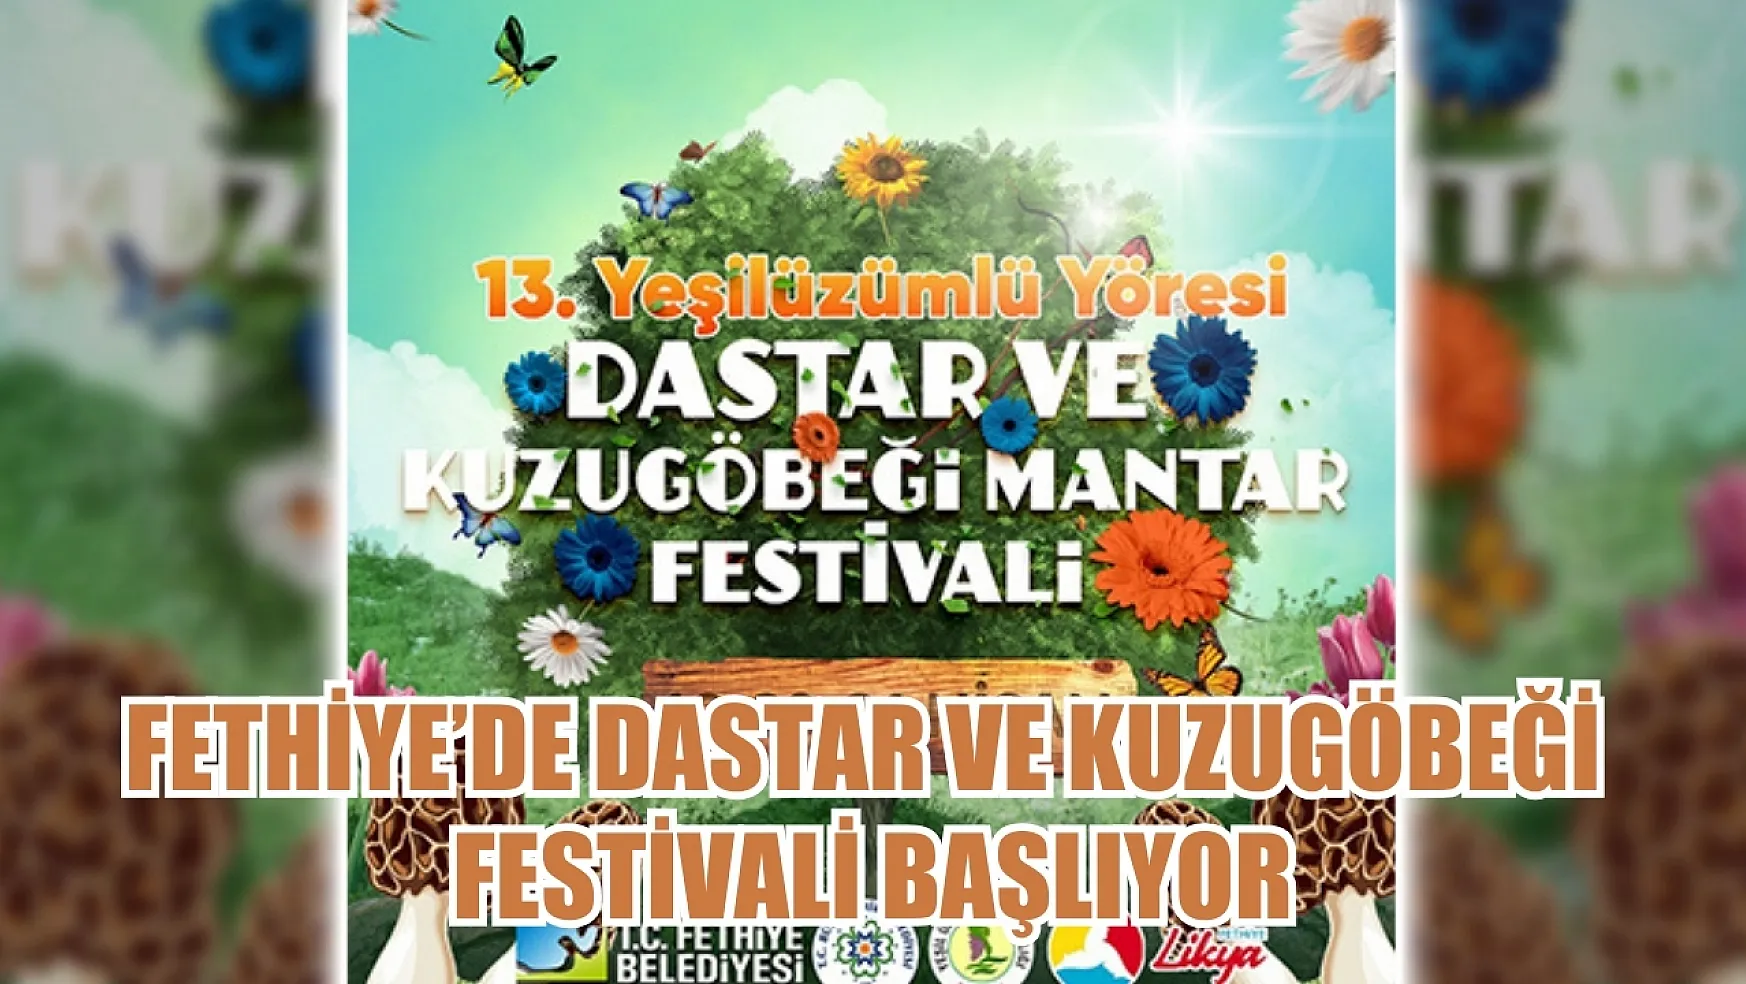 Fethiye'de Dastar ve Kuzugöbeği Festivali Başlıyor